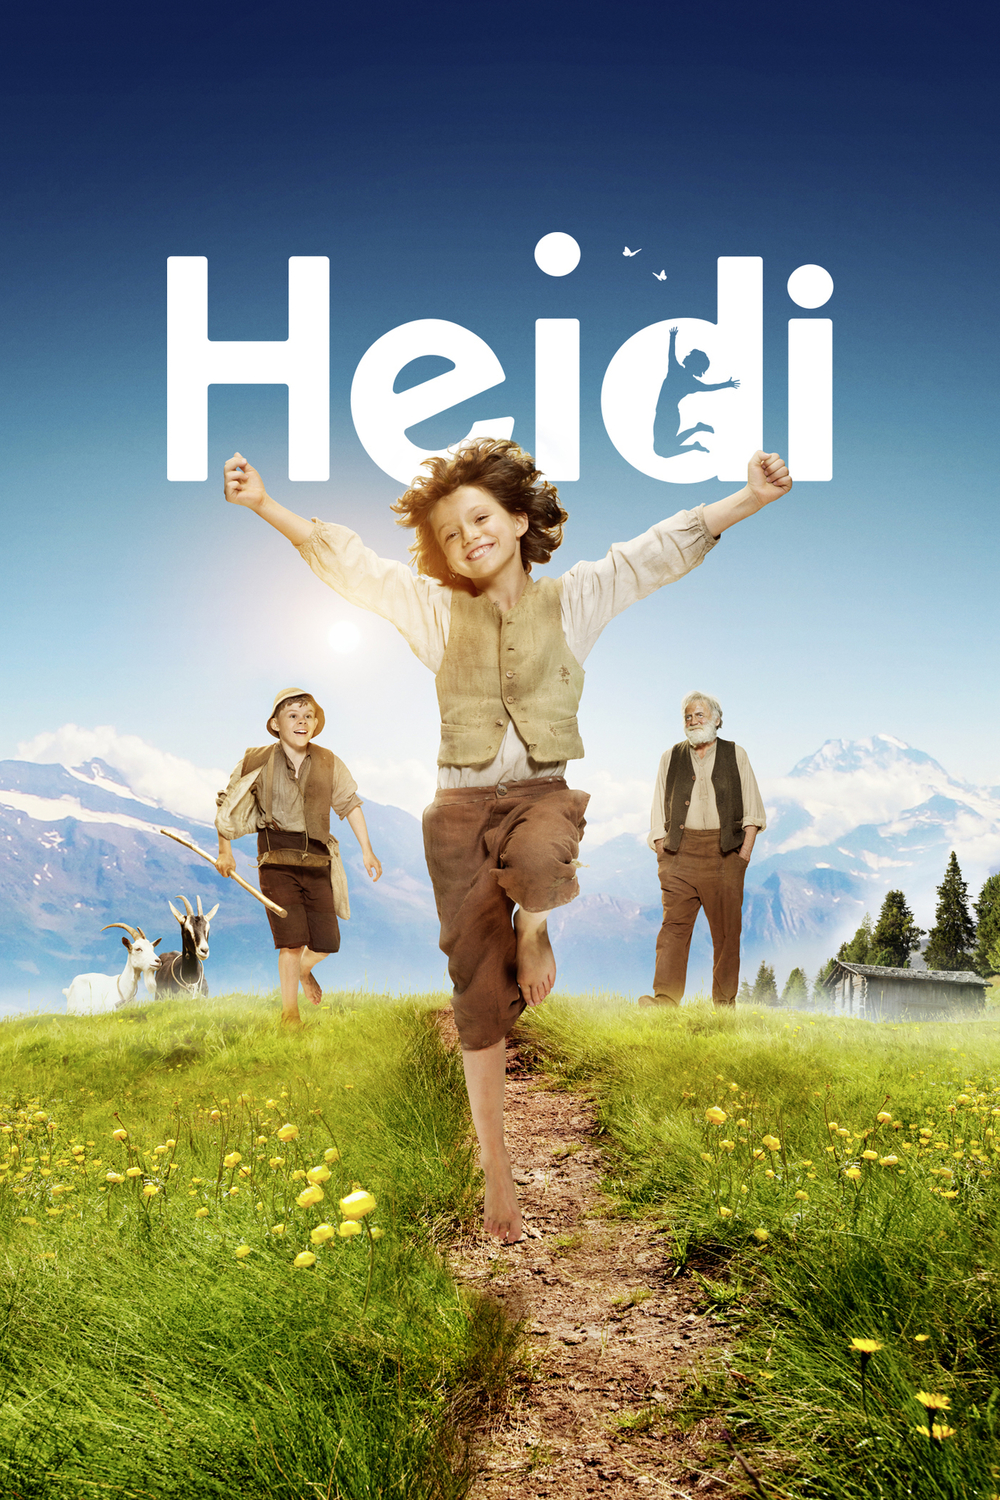 Heidi, děvčátko z hor | Fandíme filmu